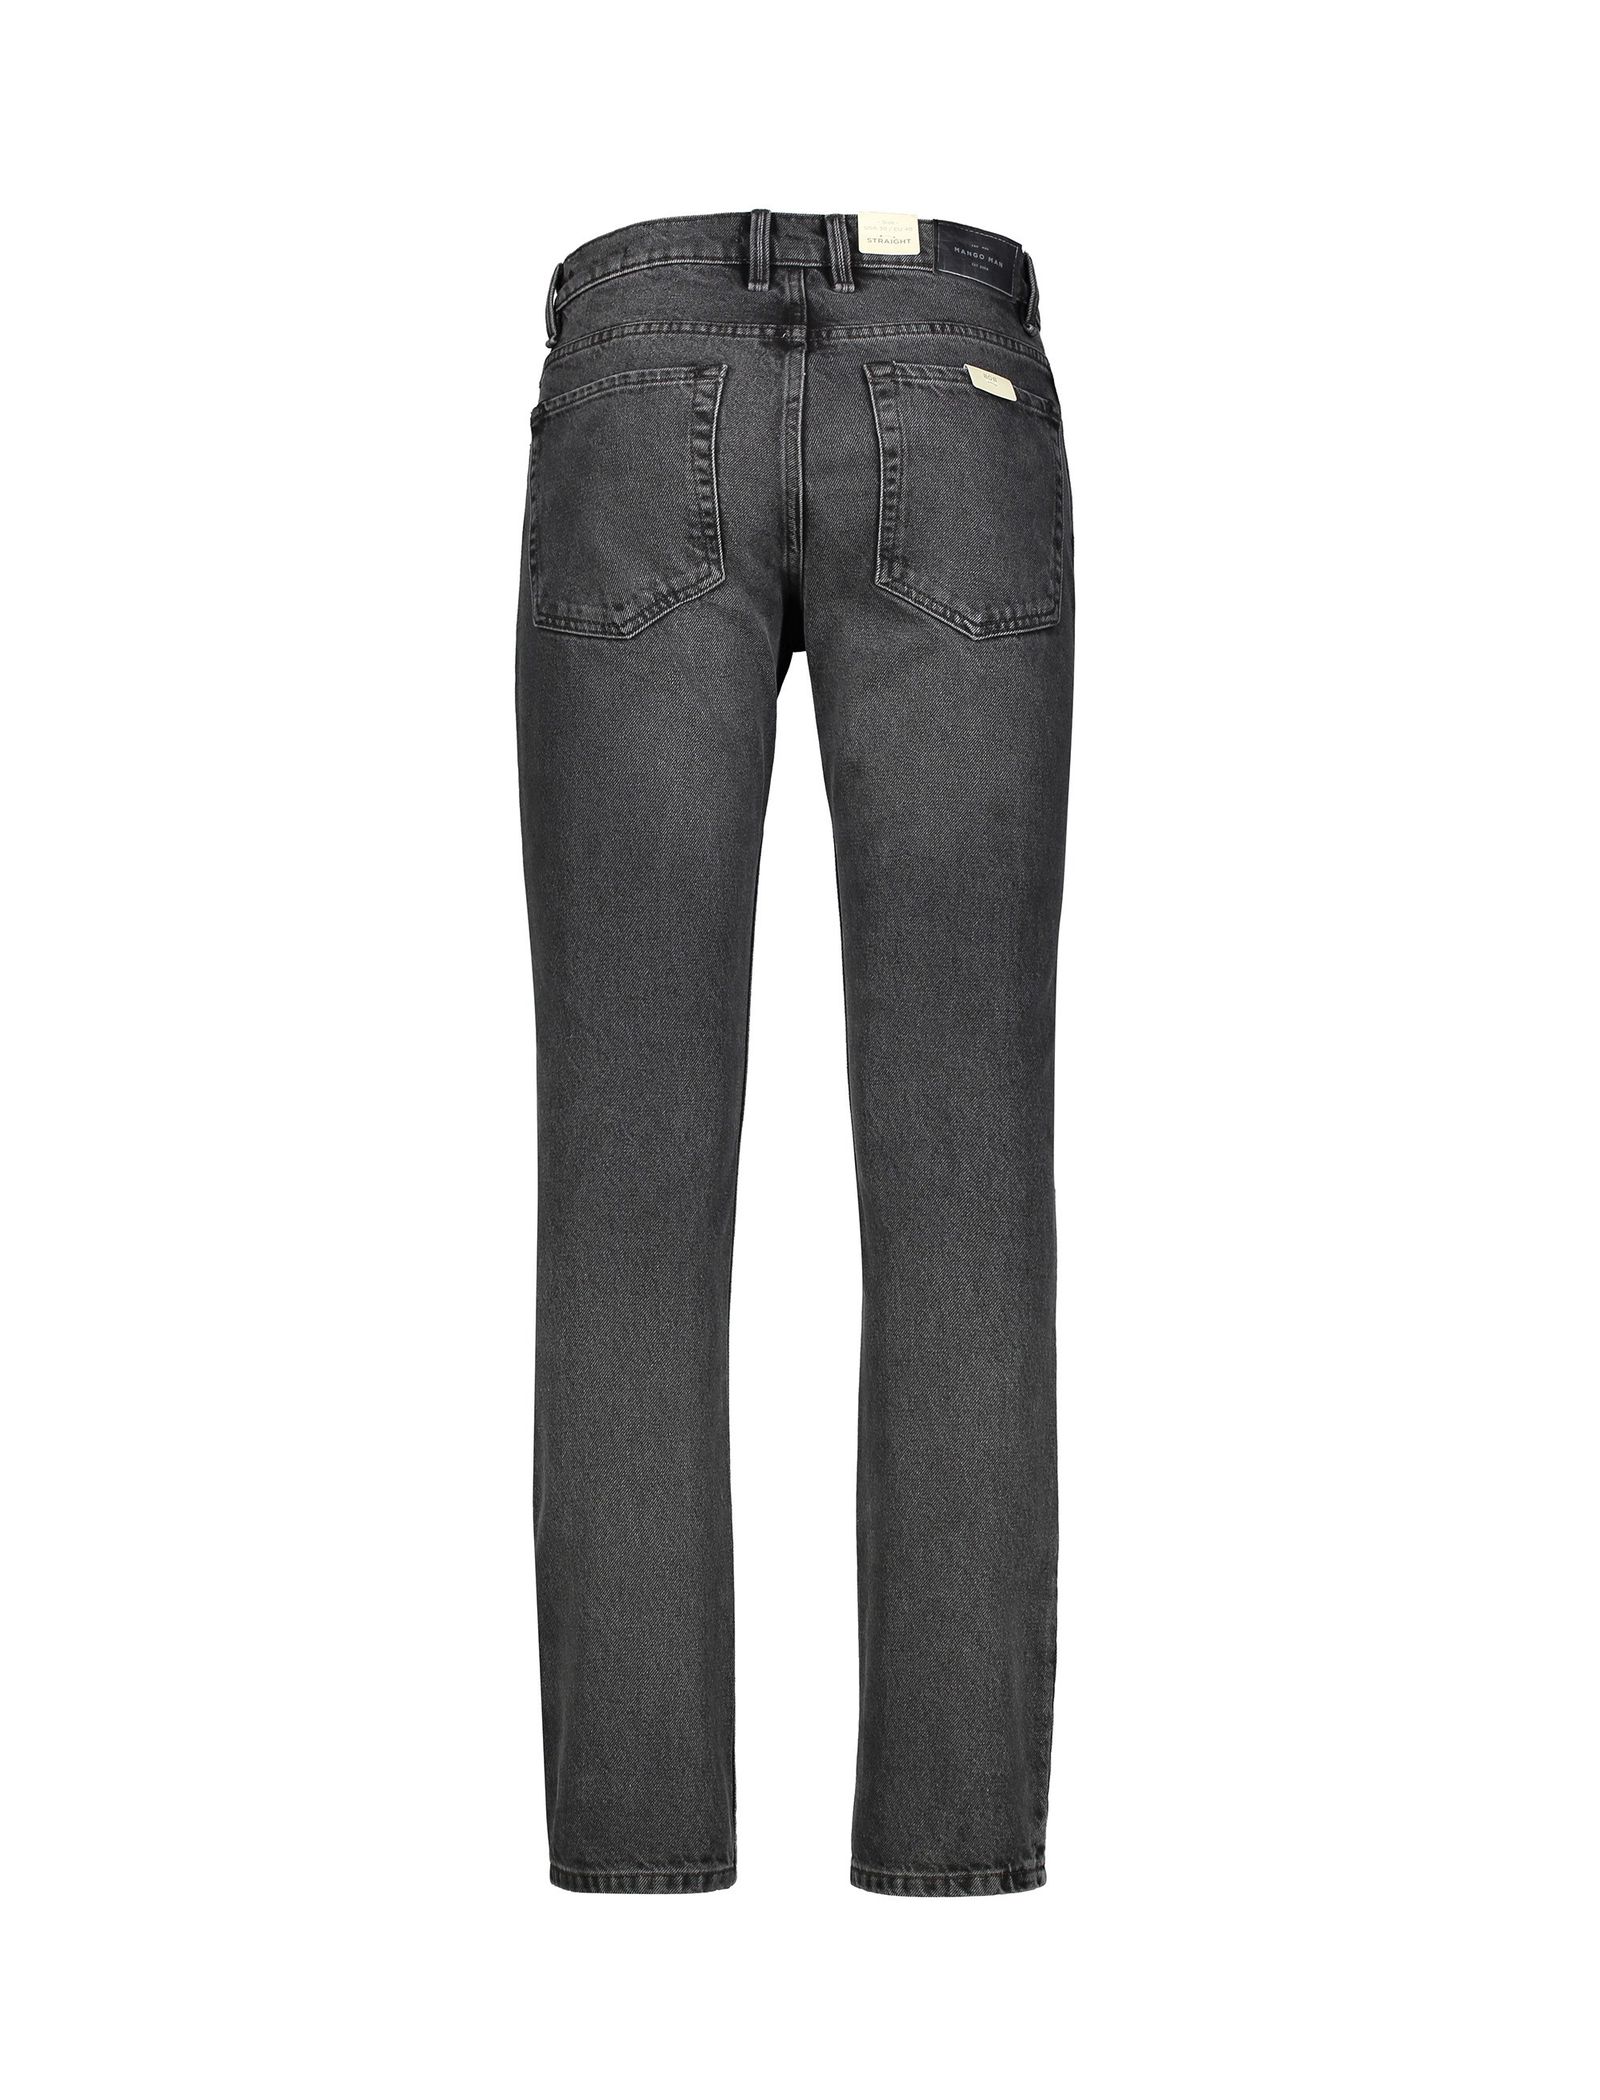 شلوار جین راسته مردانه - مانگو - زغالي - 3